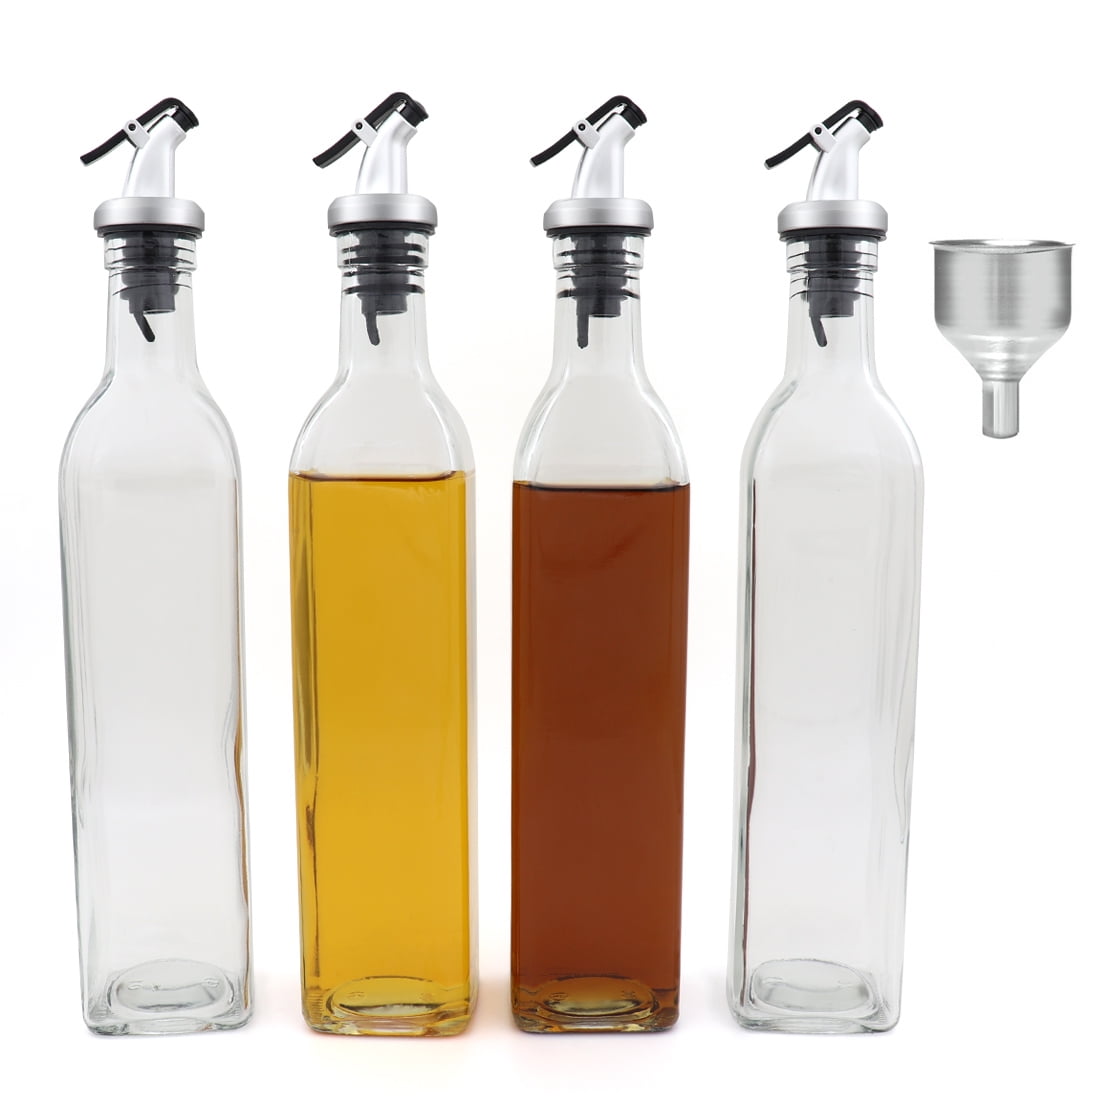 2 Pack of 10oz Glass Cooking Oil & Vinegar Cruet Set for Kitchen and BBQ FARI Stainless Steel Olive Oil Dispenser Bottle Set